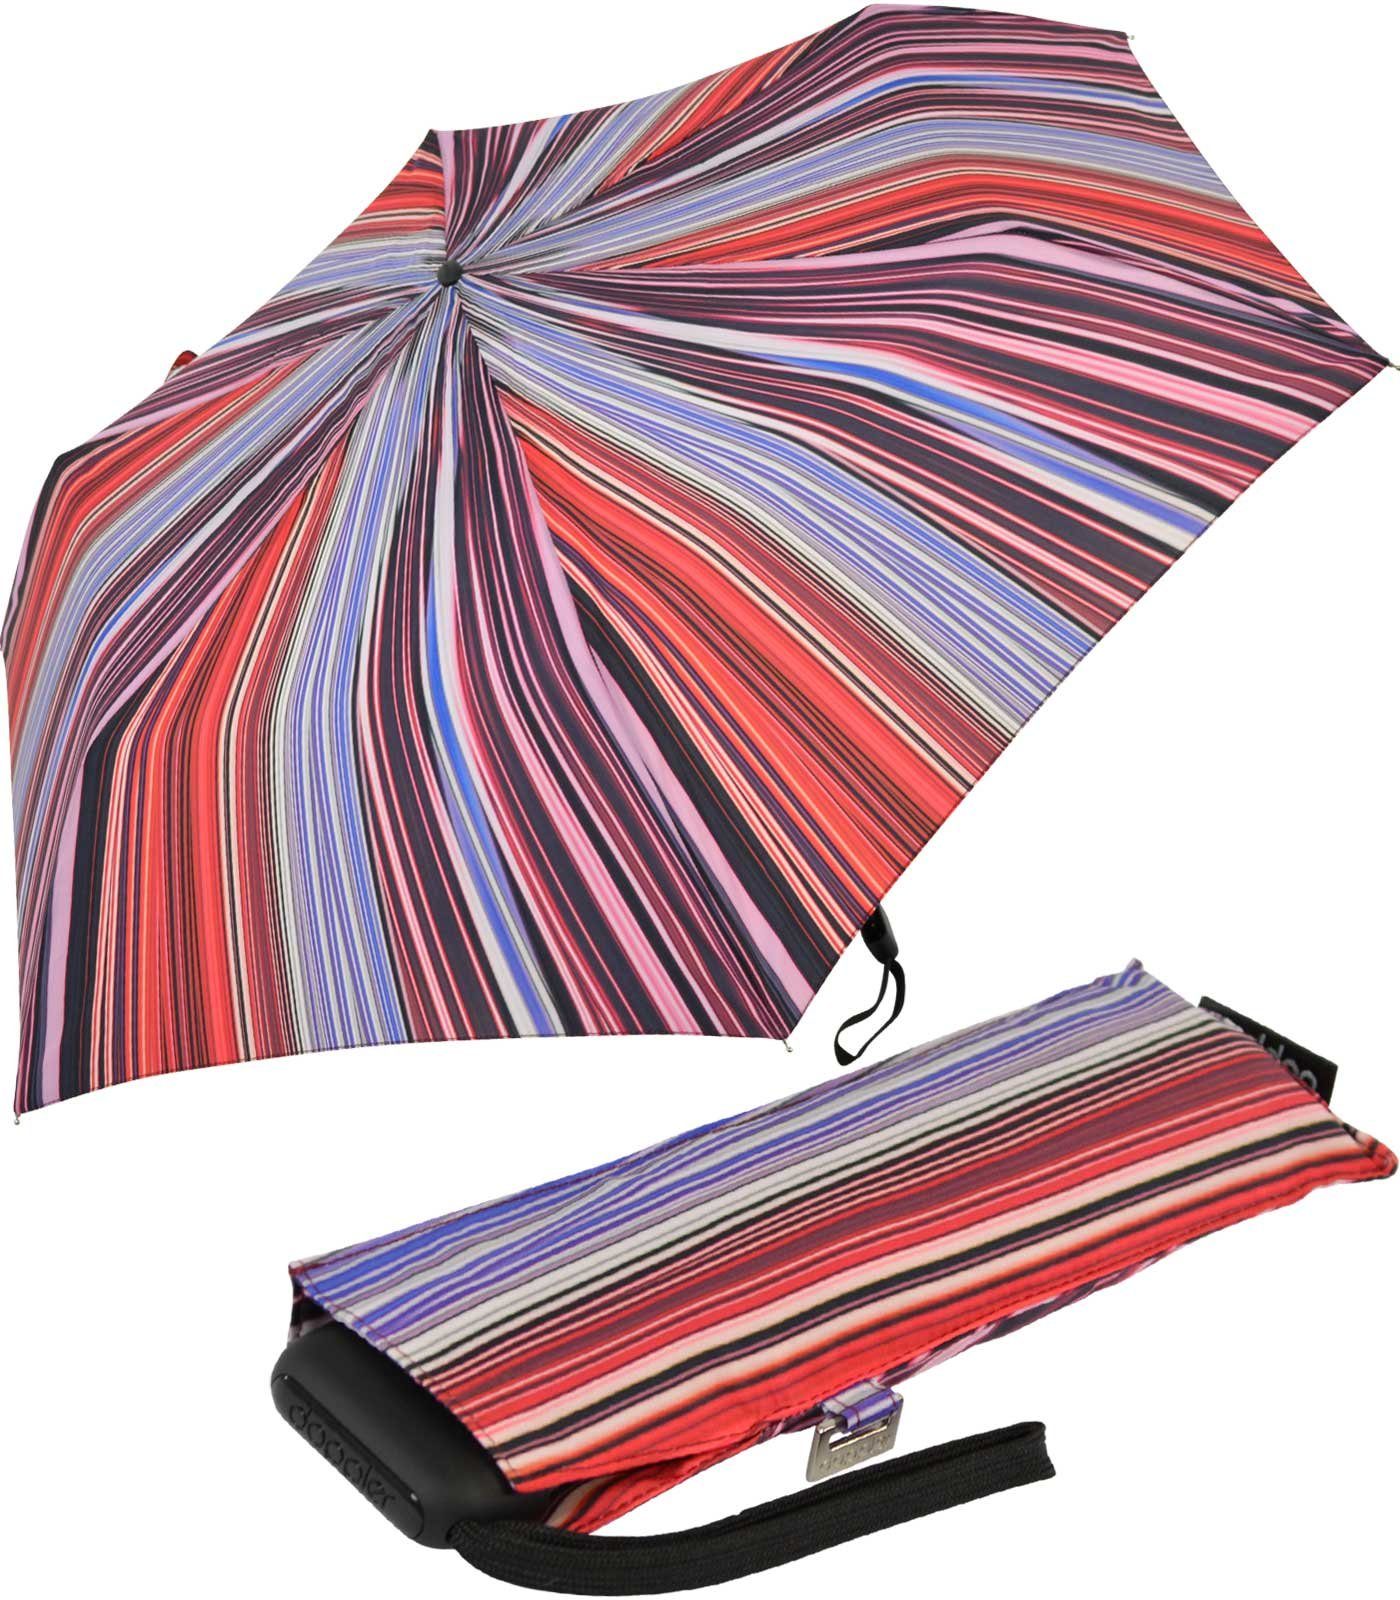 doppler® Taschenregenschirm ein leichter und flacher Schirm für jede Tasche, dieser treue Begleiter findet überall Platz lila-bordeaux